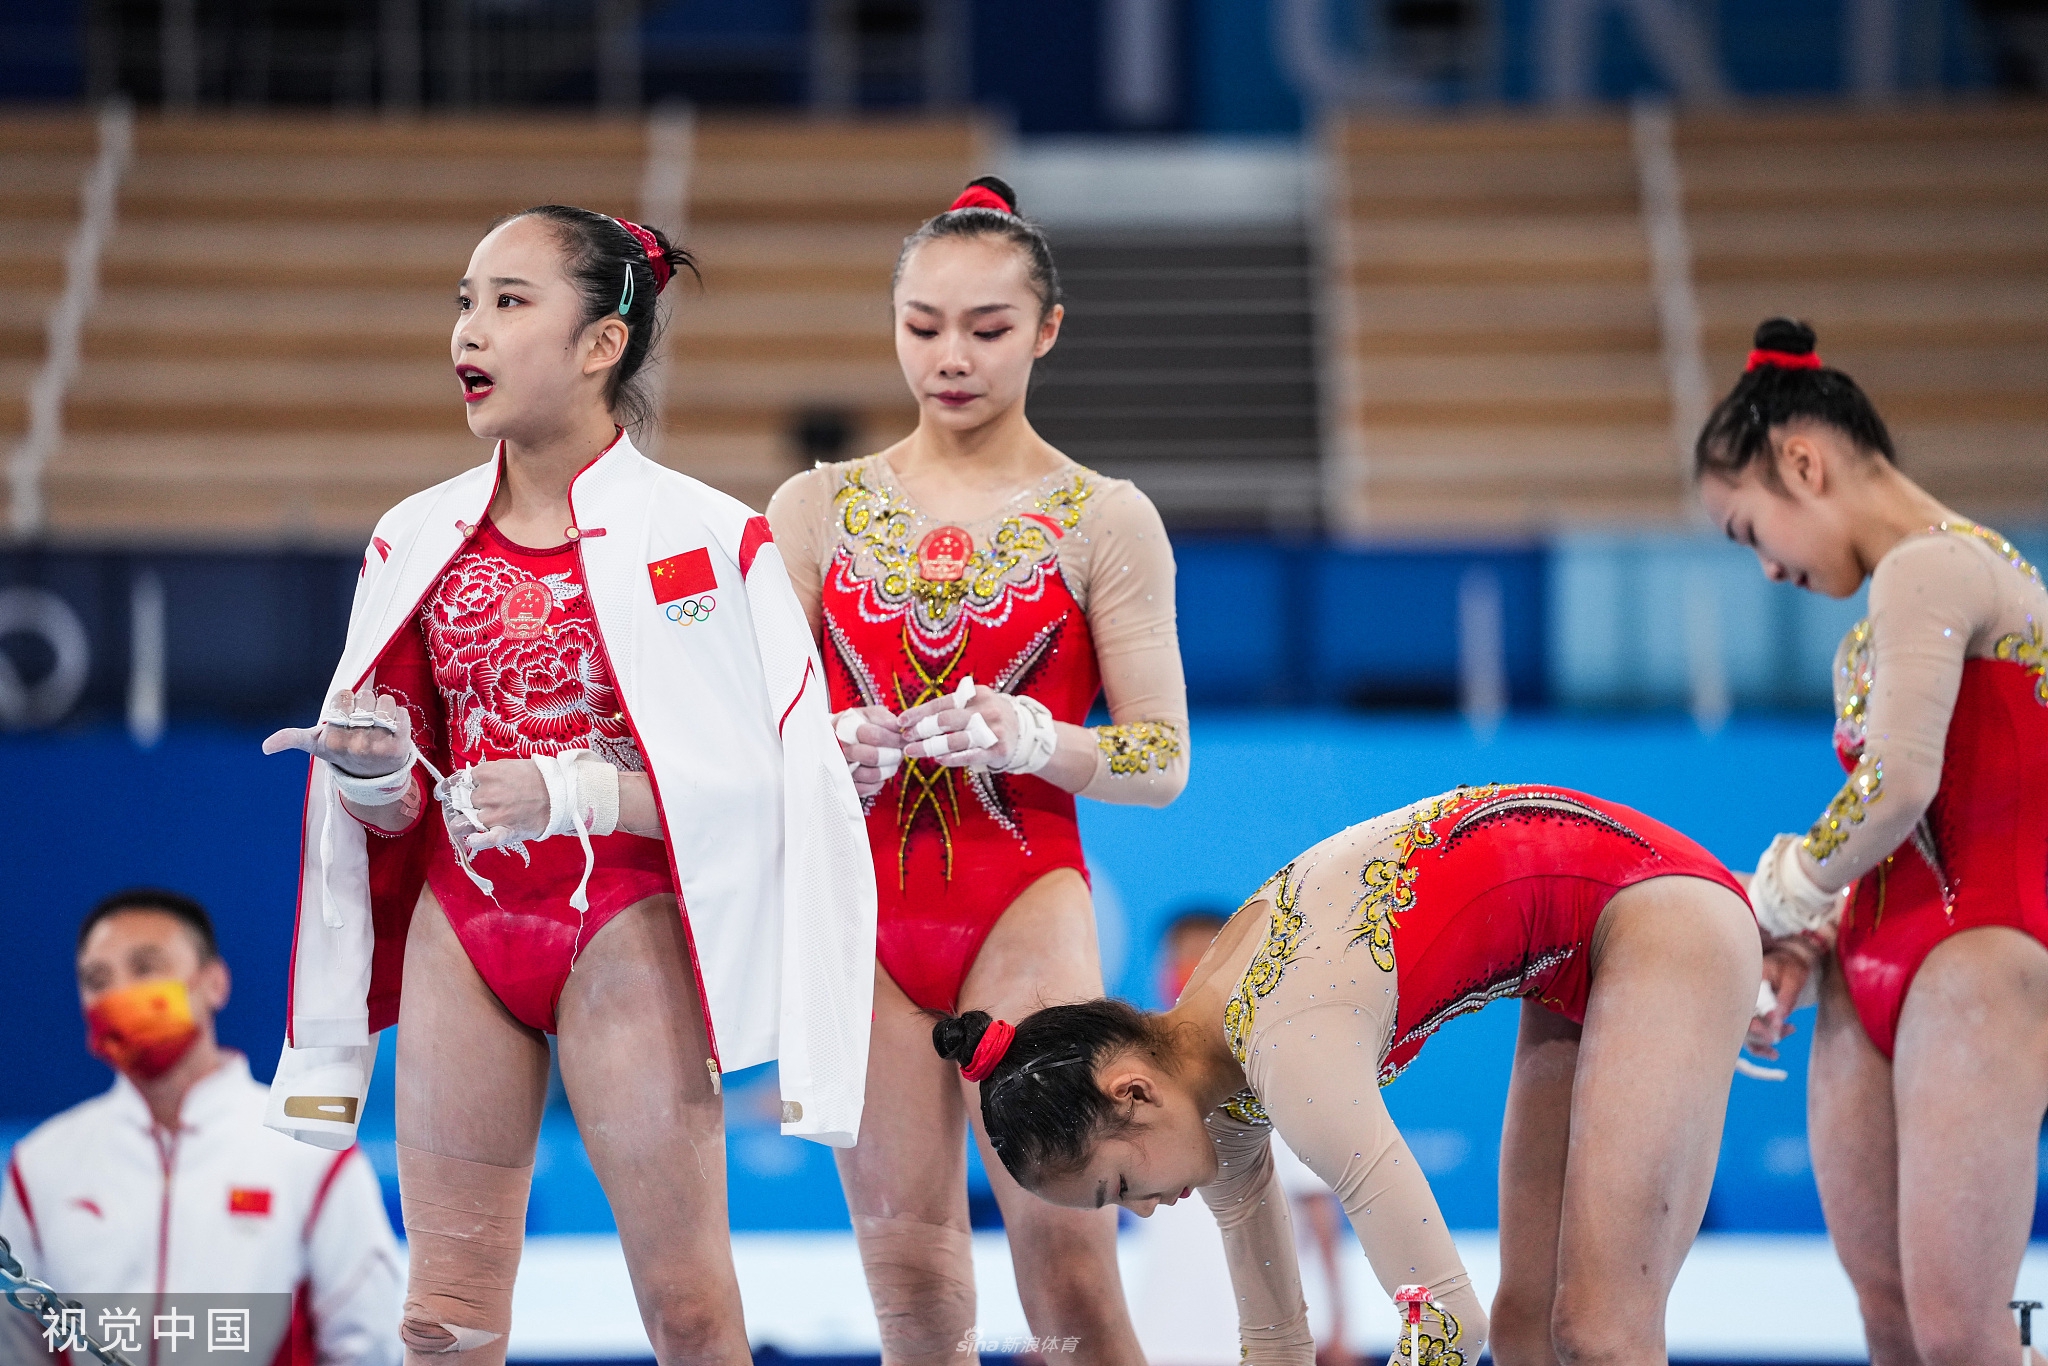 中国女子体操队训练备战奥运 高清图集 新浪网